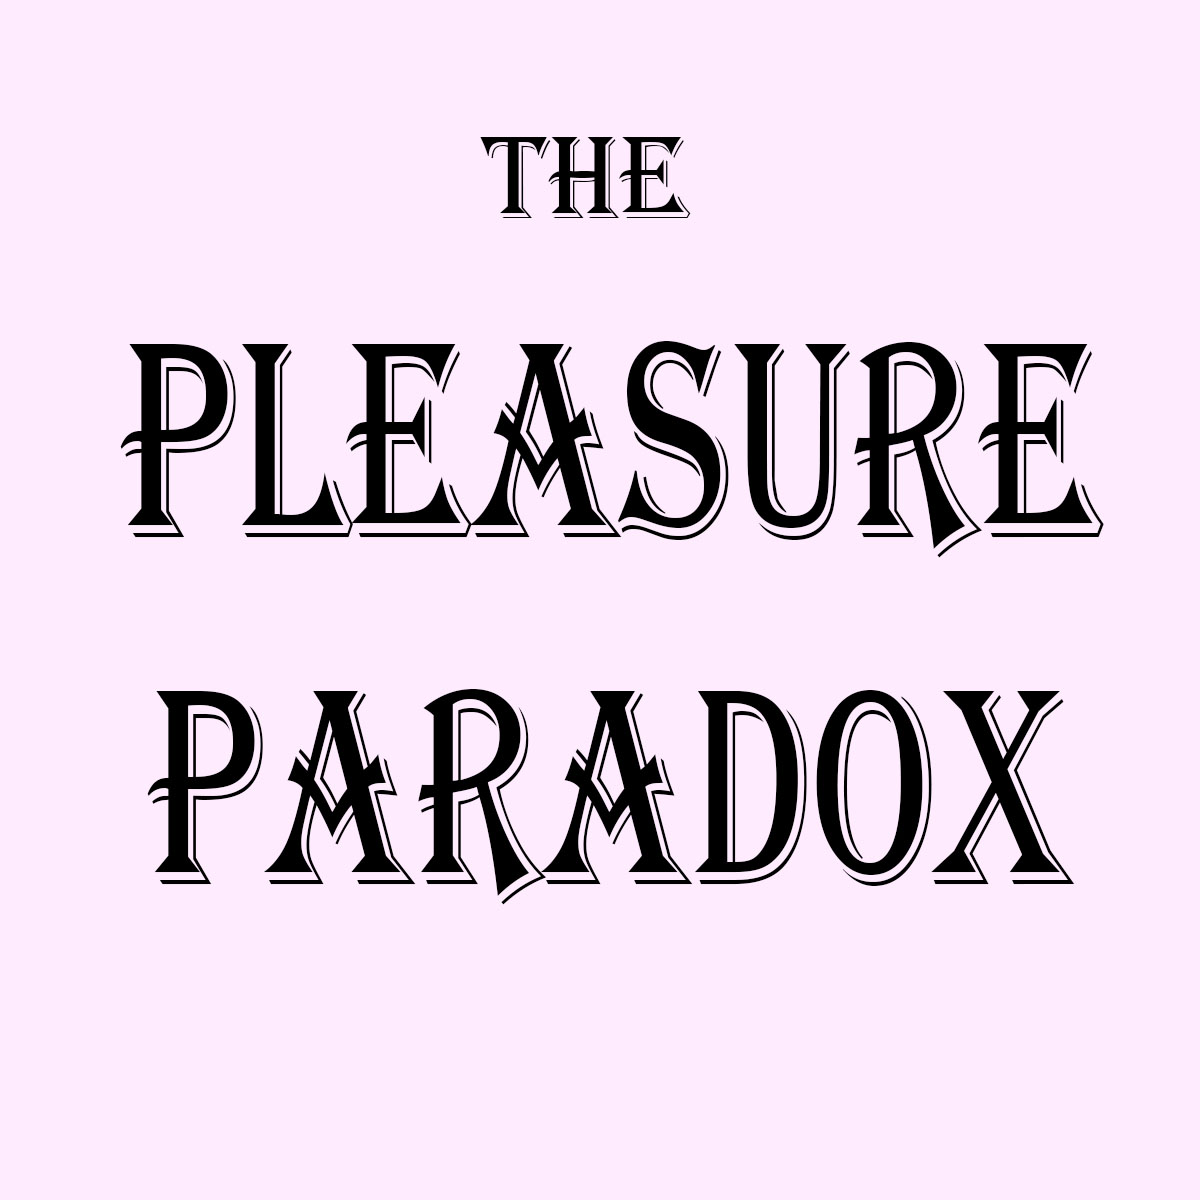 Pleasure Paradox